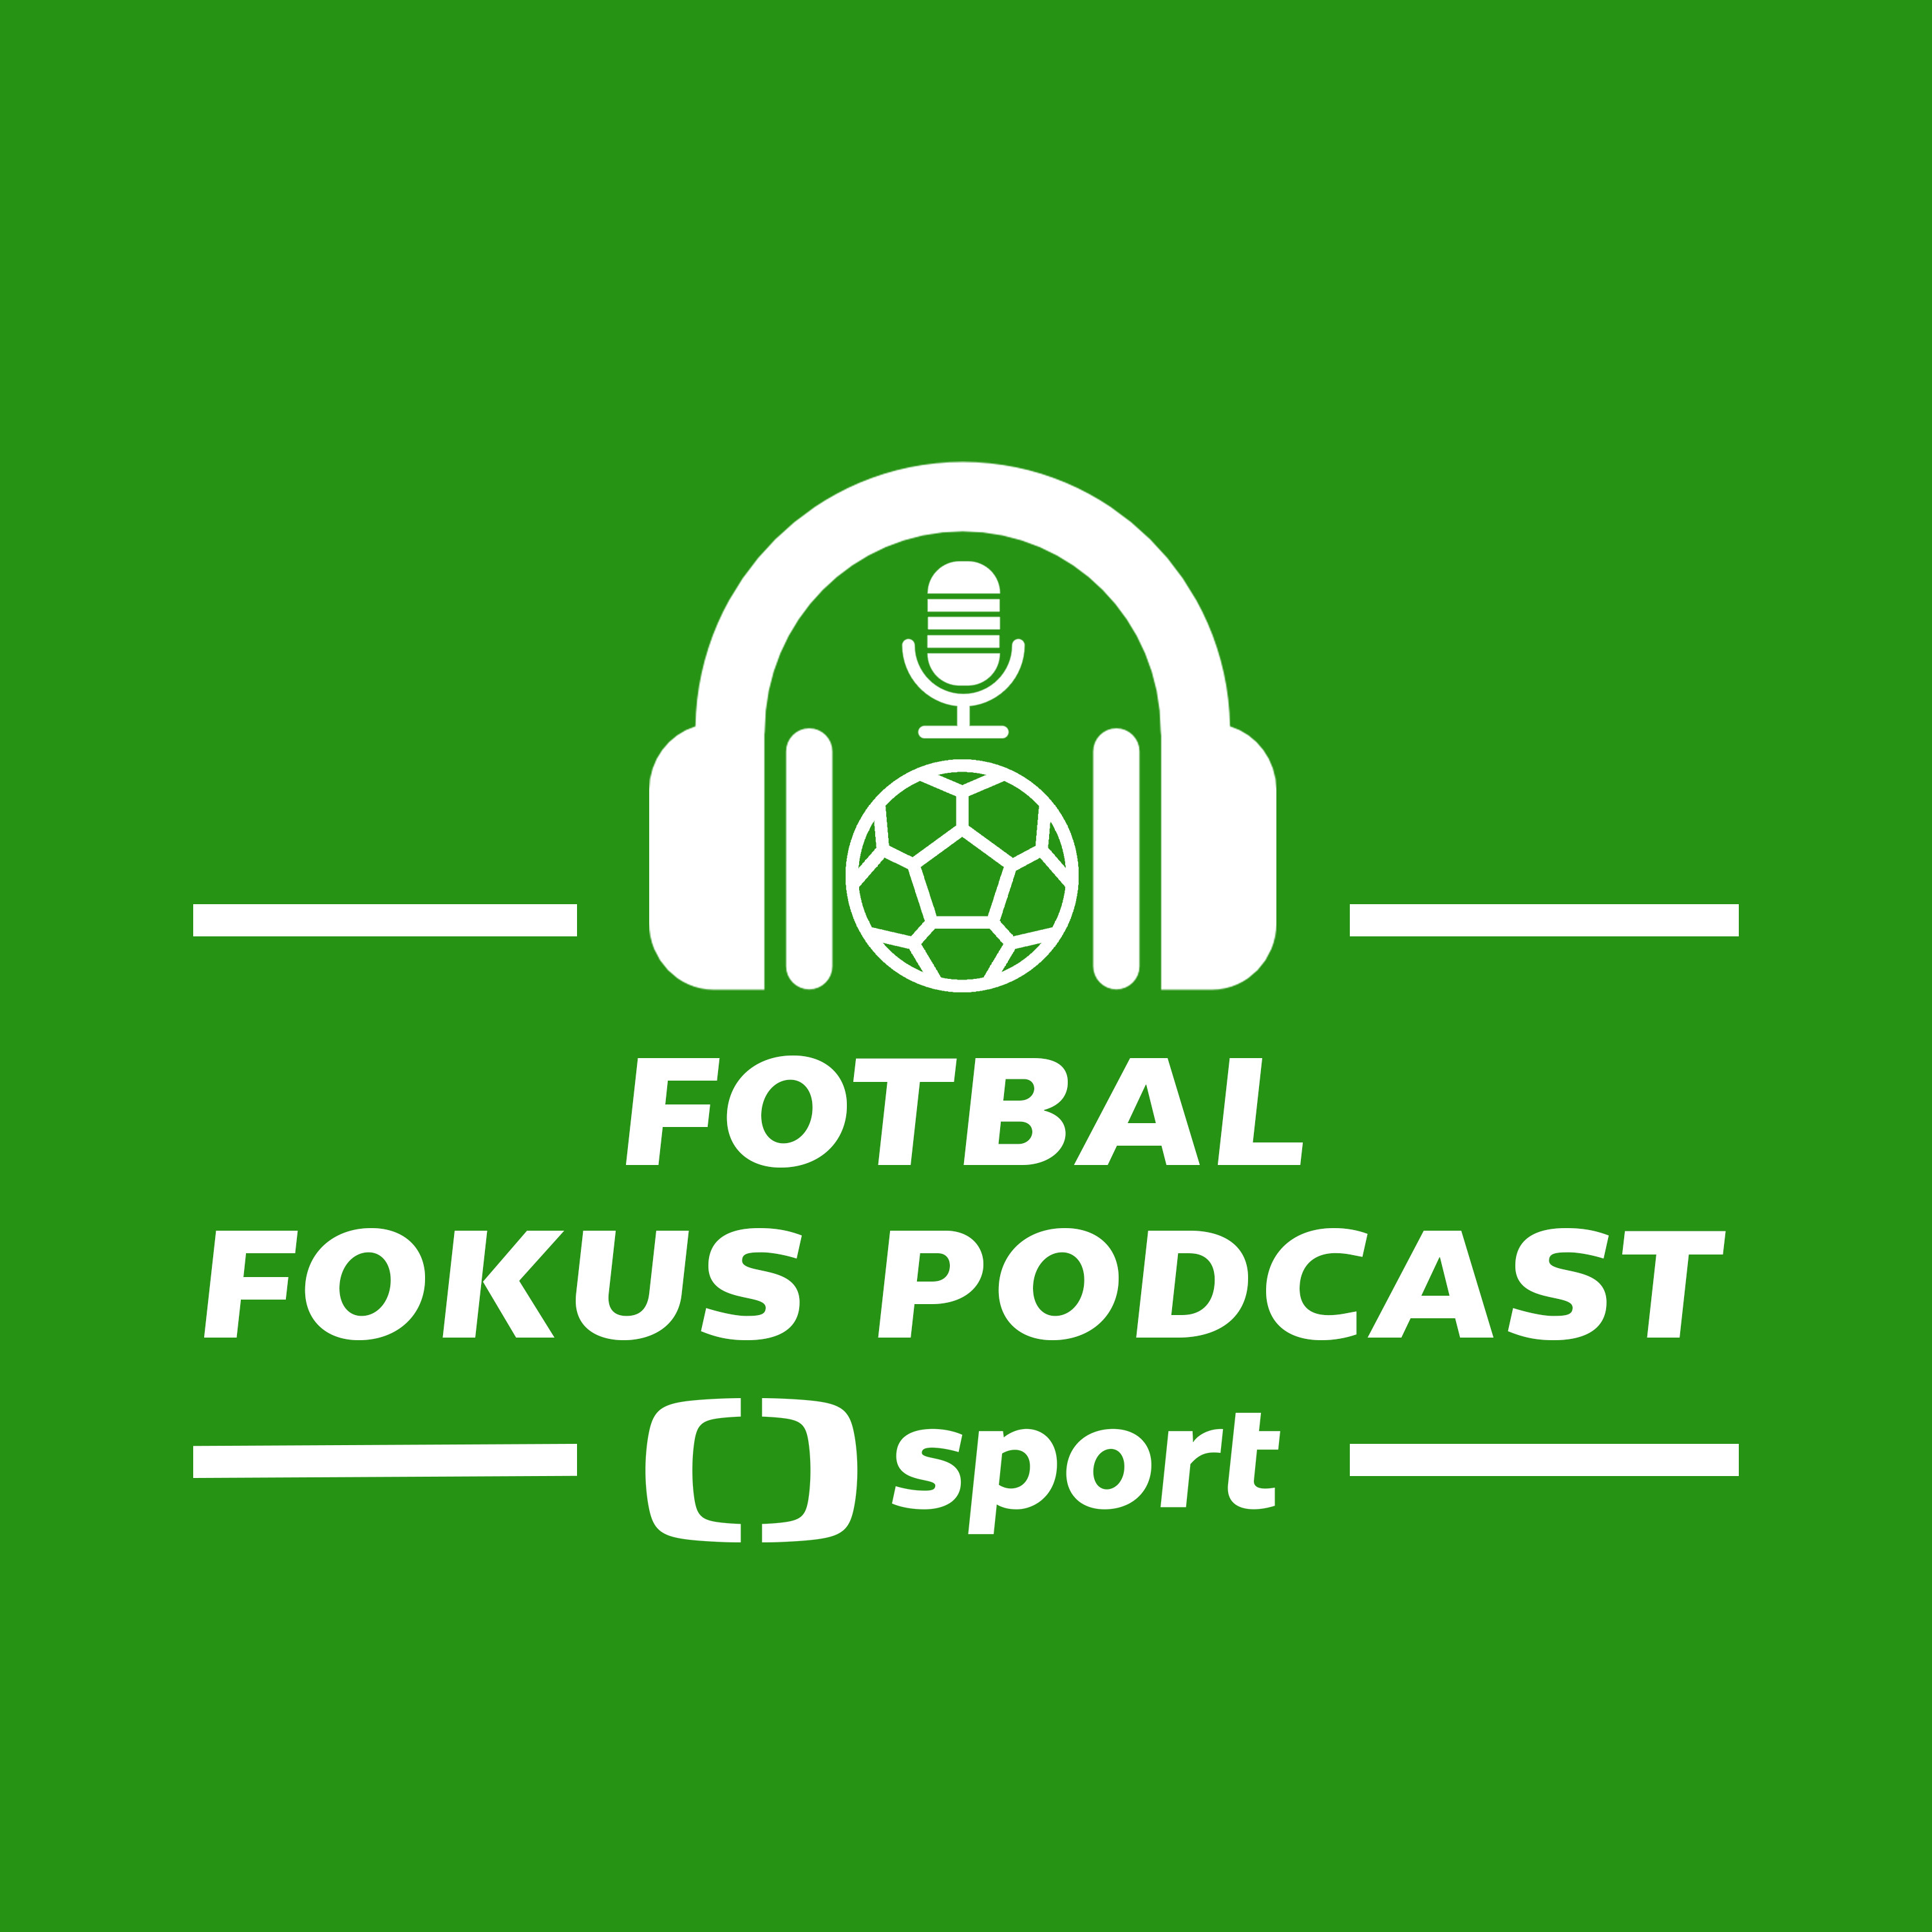 Fotbal fokus podcast: Španělsko vládcem ME. Nejhorší zážitek z Eura, ligové změny